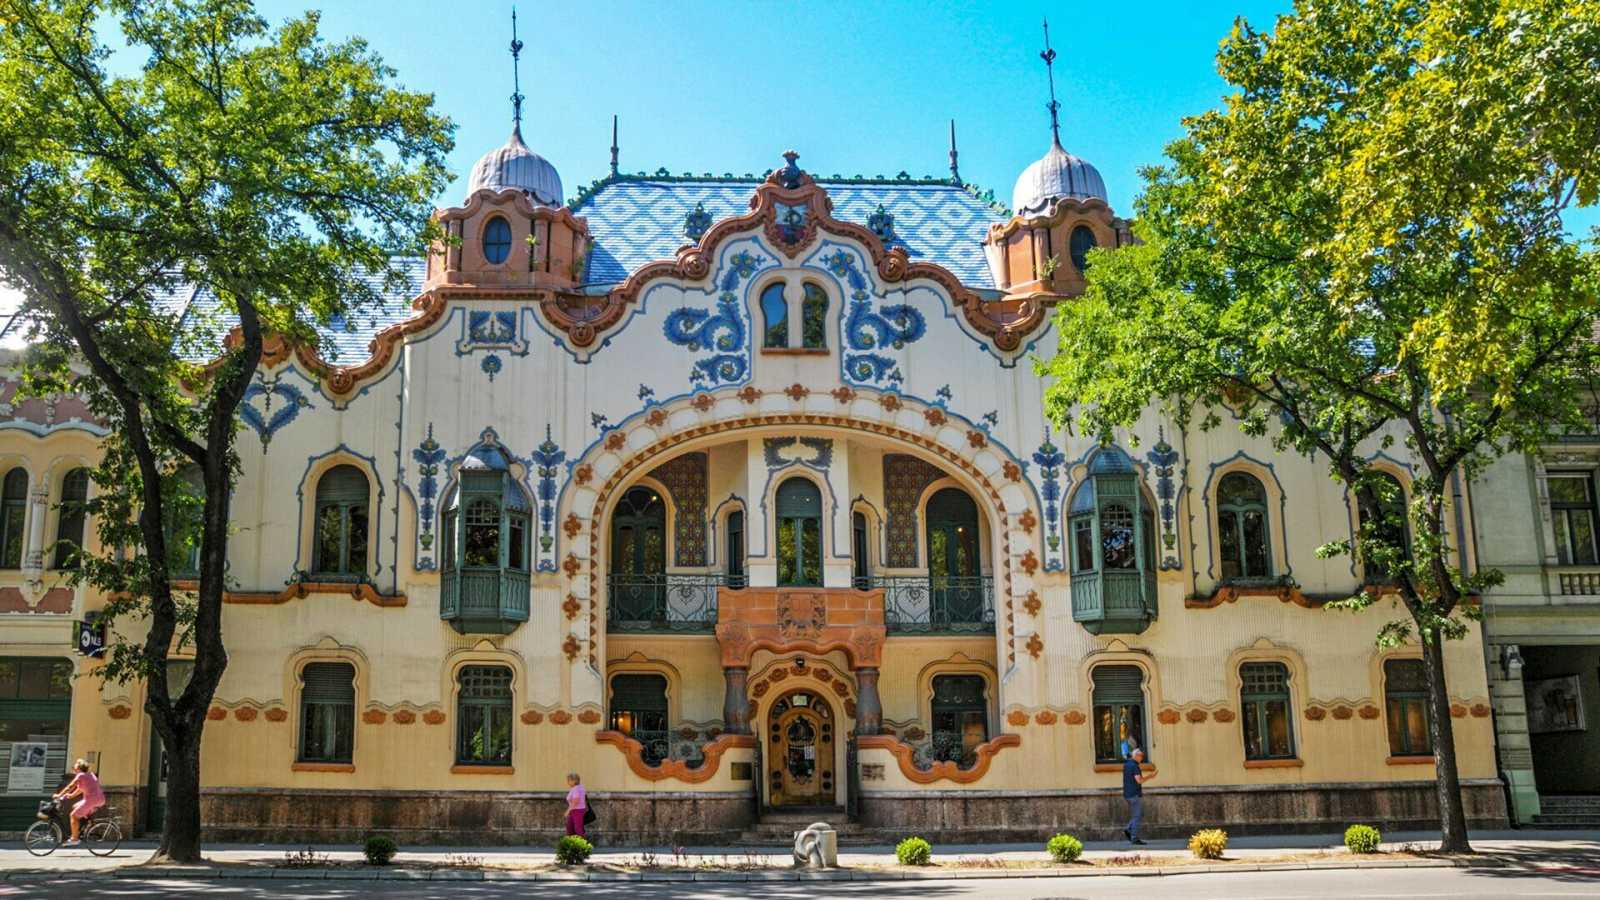 A szabadkai „Cifra palota” – Raichle Ferenc palotája l Fotó: turistamagazin.hu/Tóth Éva